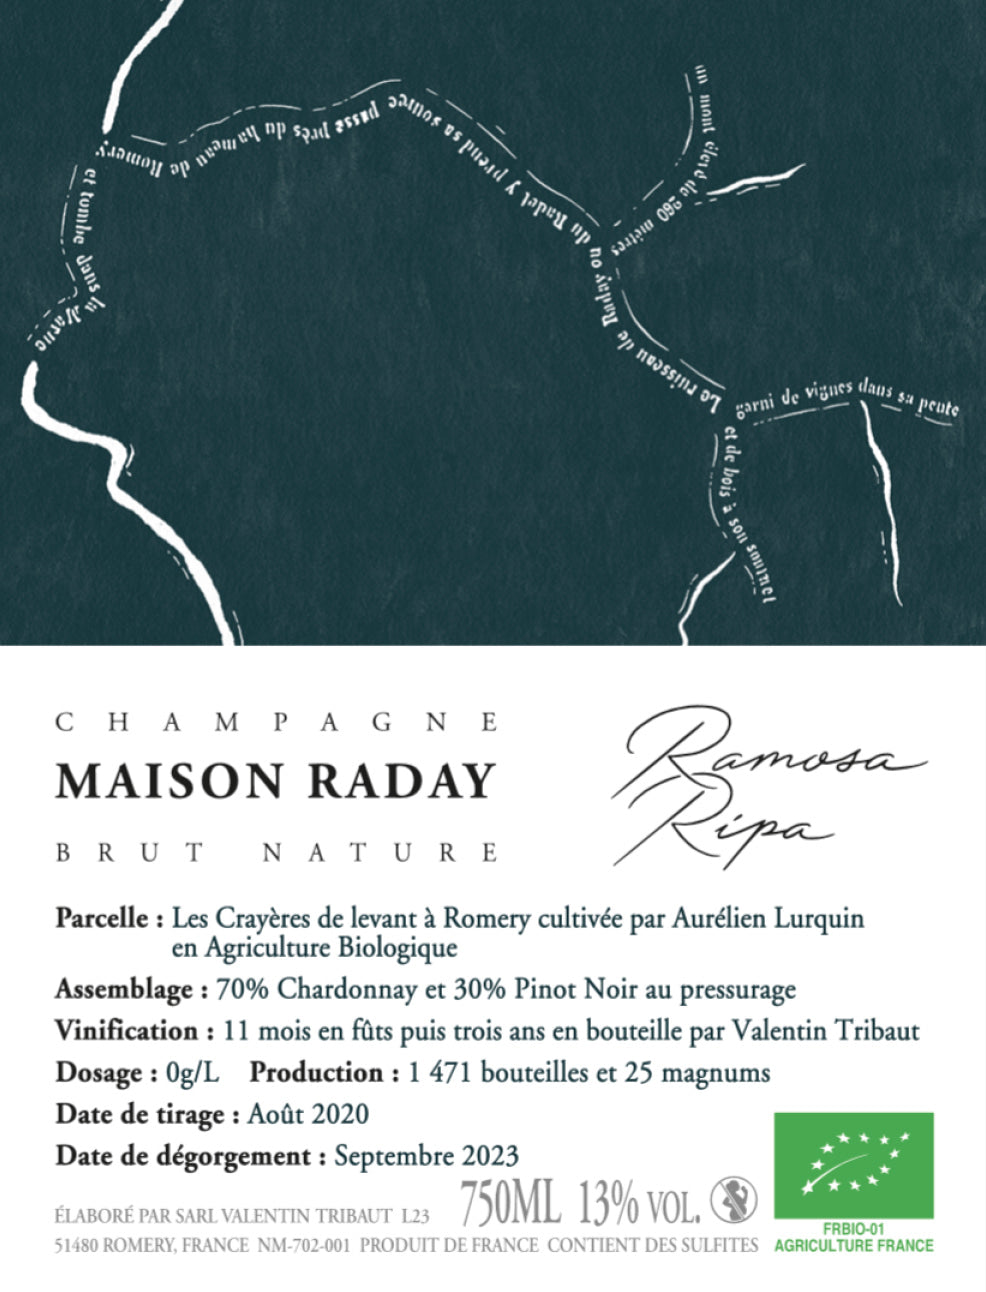 NV Maison Raday, Rimosa Ripa Brut Nature, Champagne (2019 Base)